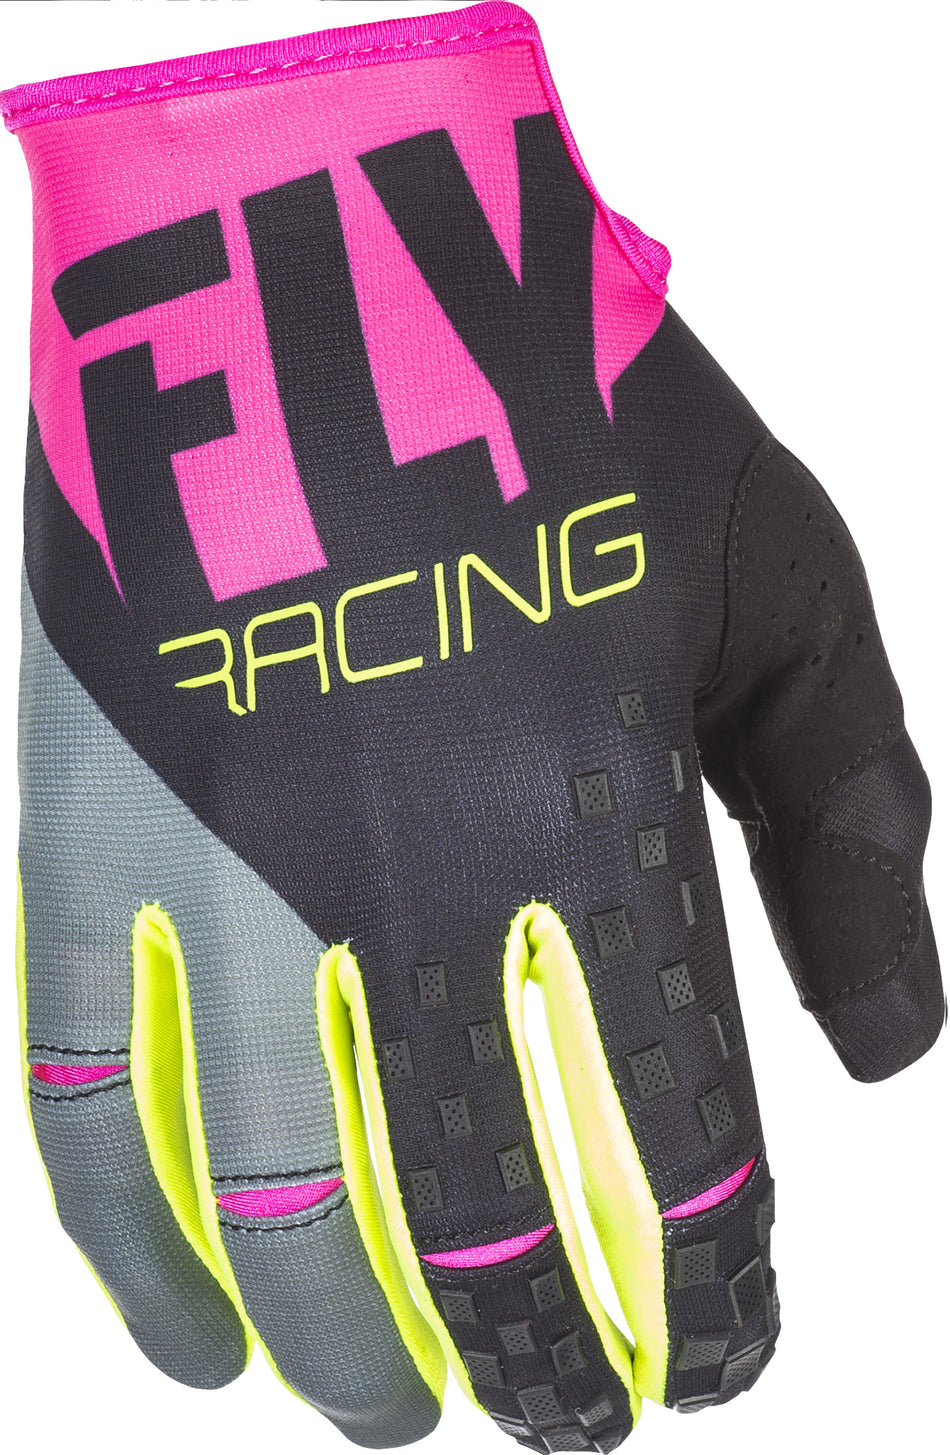 FLY RACING Kinetic Gloves Neon Pink/Black/Hi-Vis Sz 13 371-41913